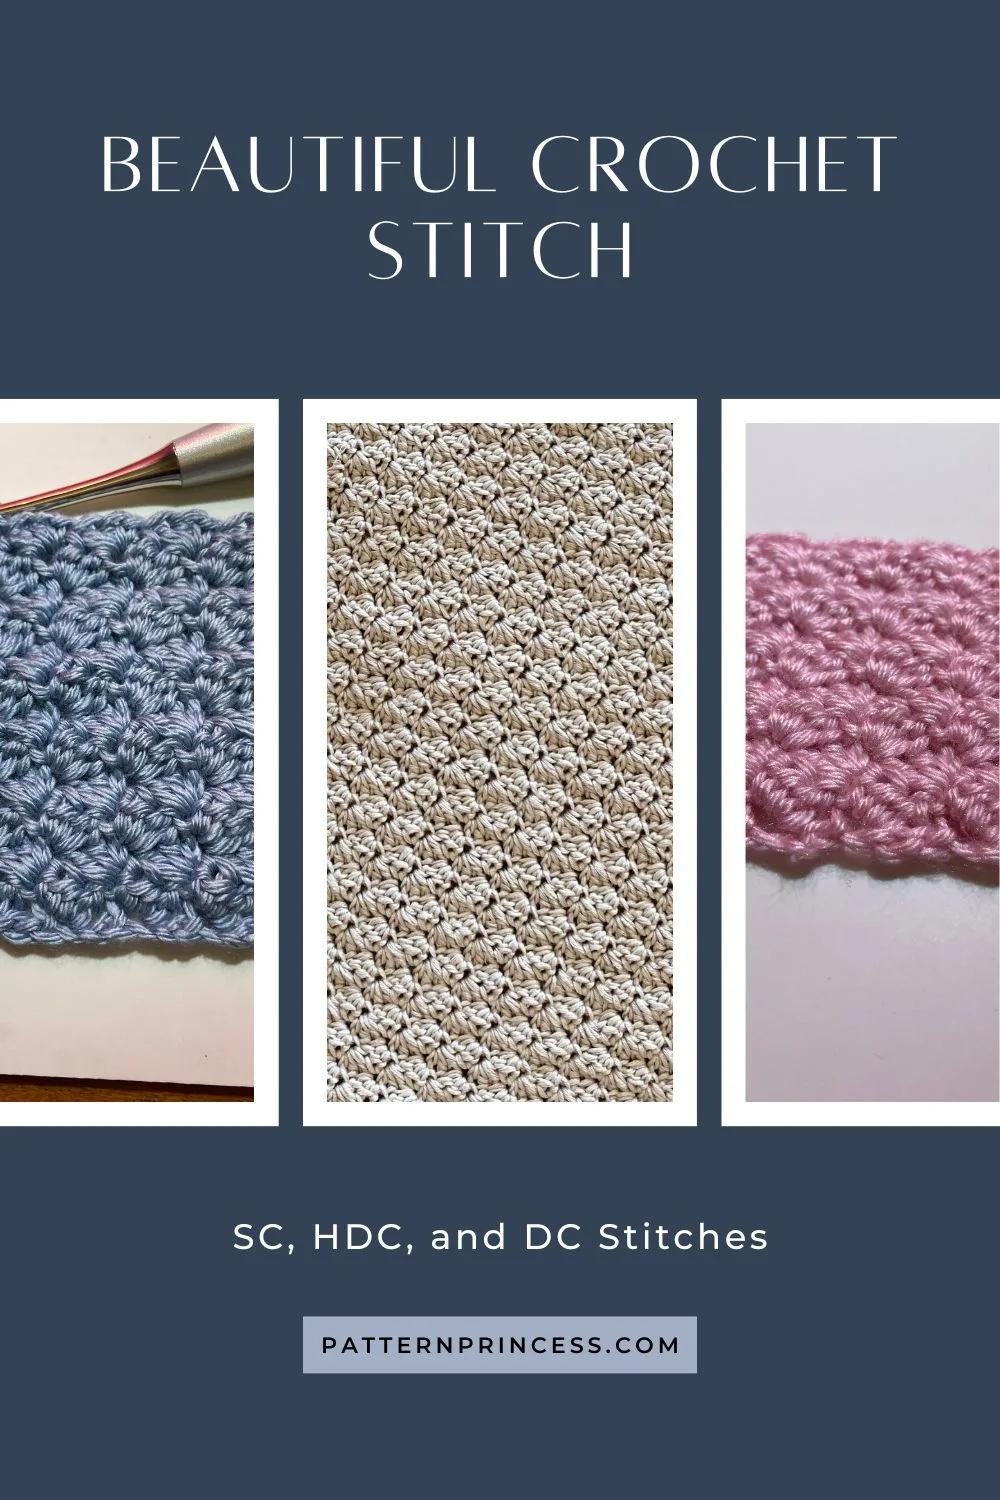 Beautiful crochet stitch